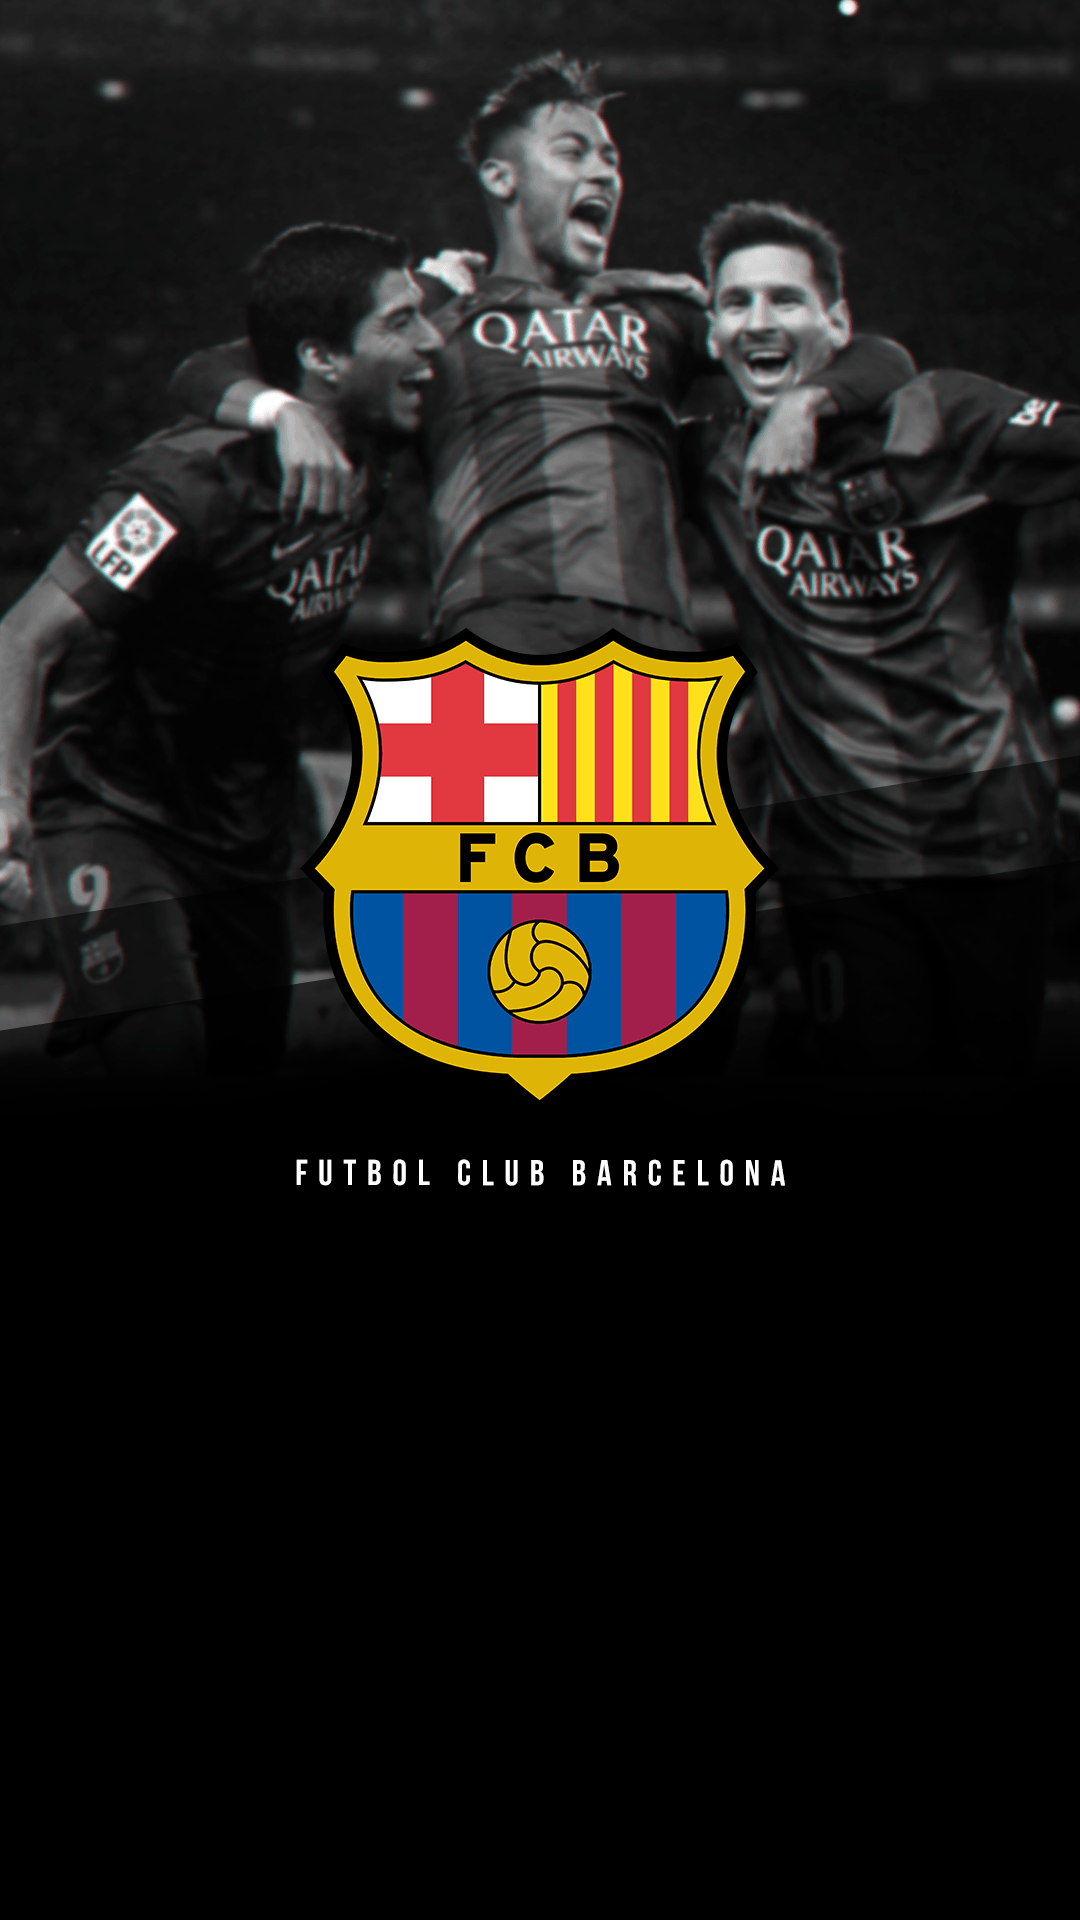 FC Barcelona iphone wallpaper tumblr. iPhone.Wallru.com. Adorable